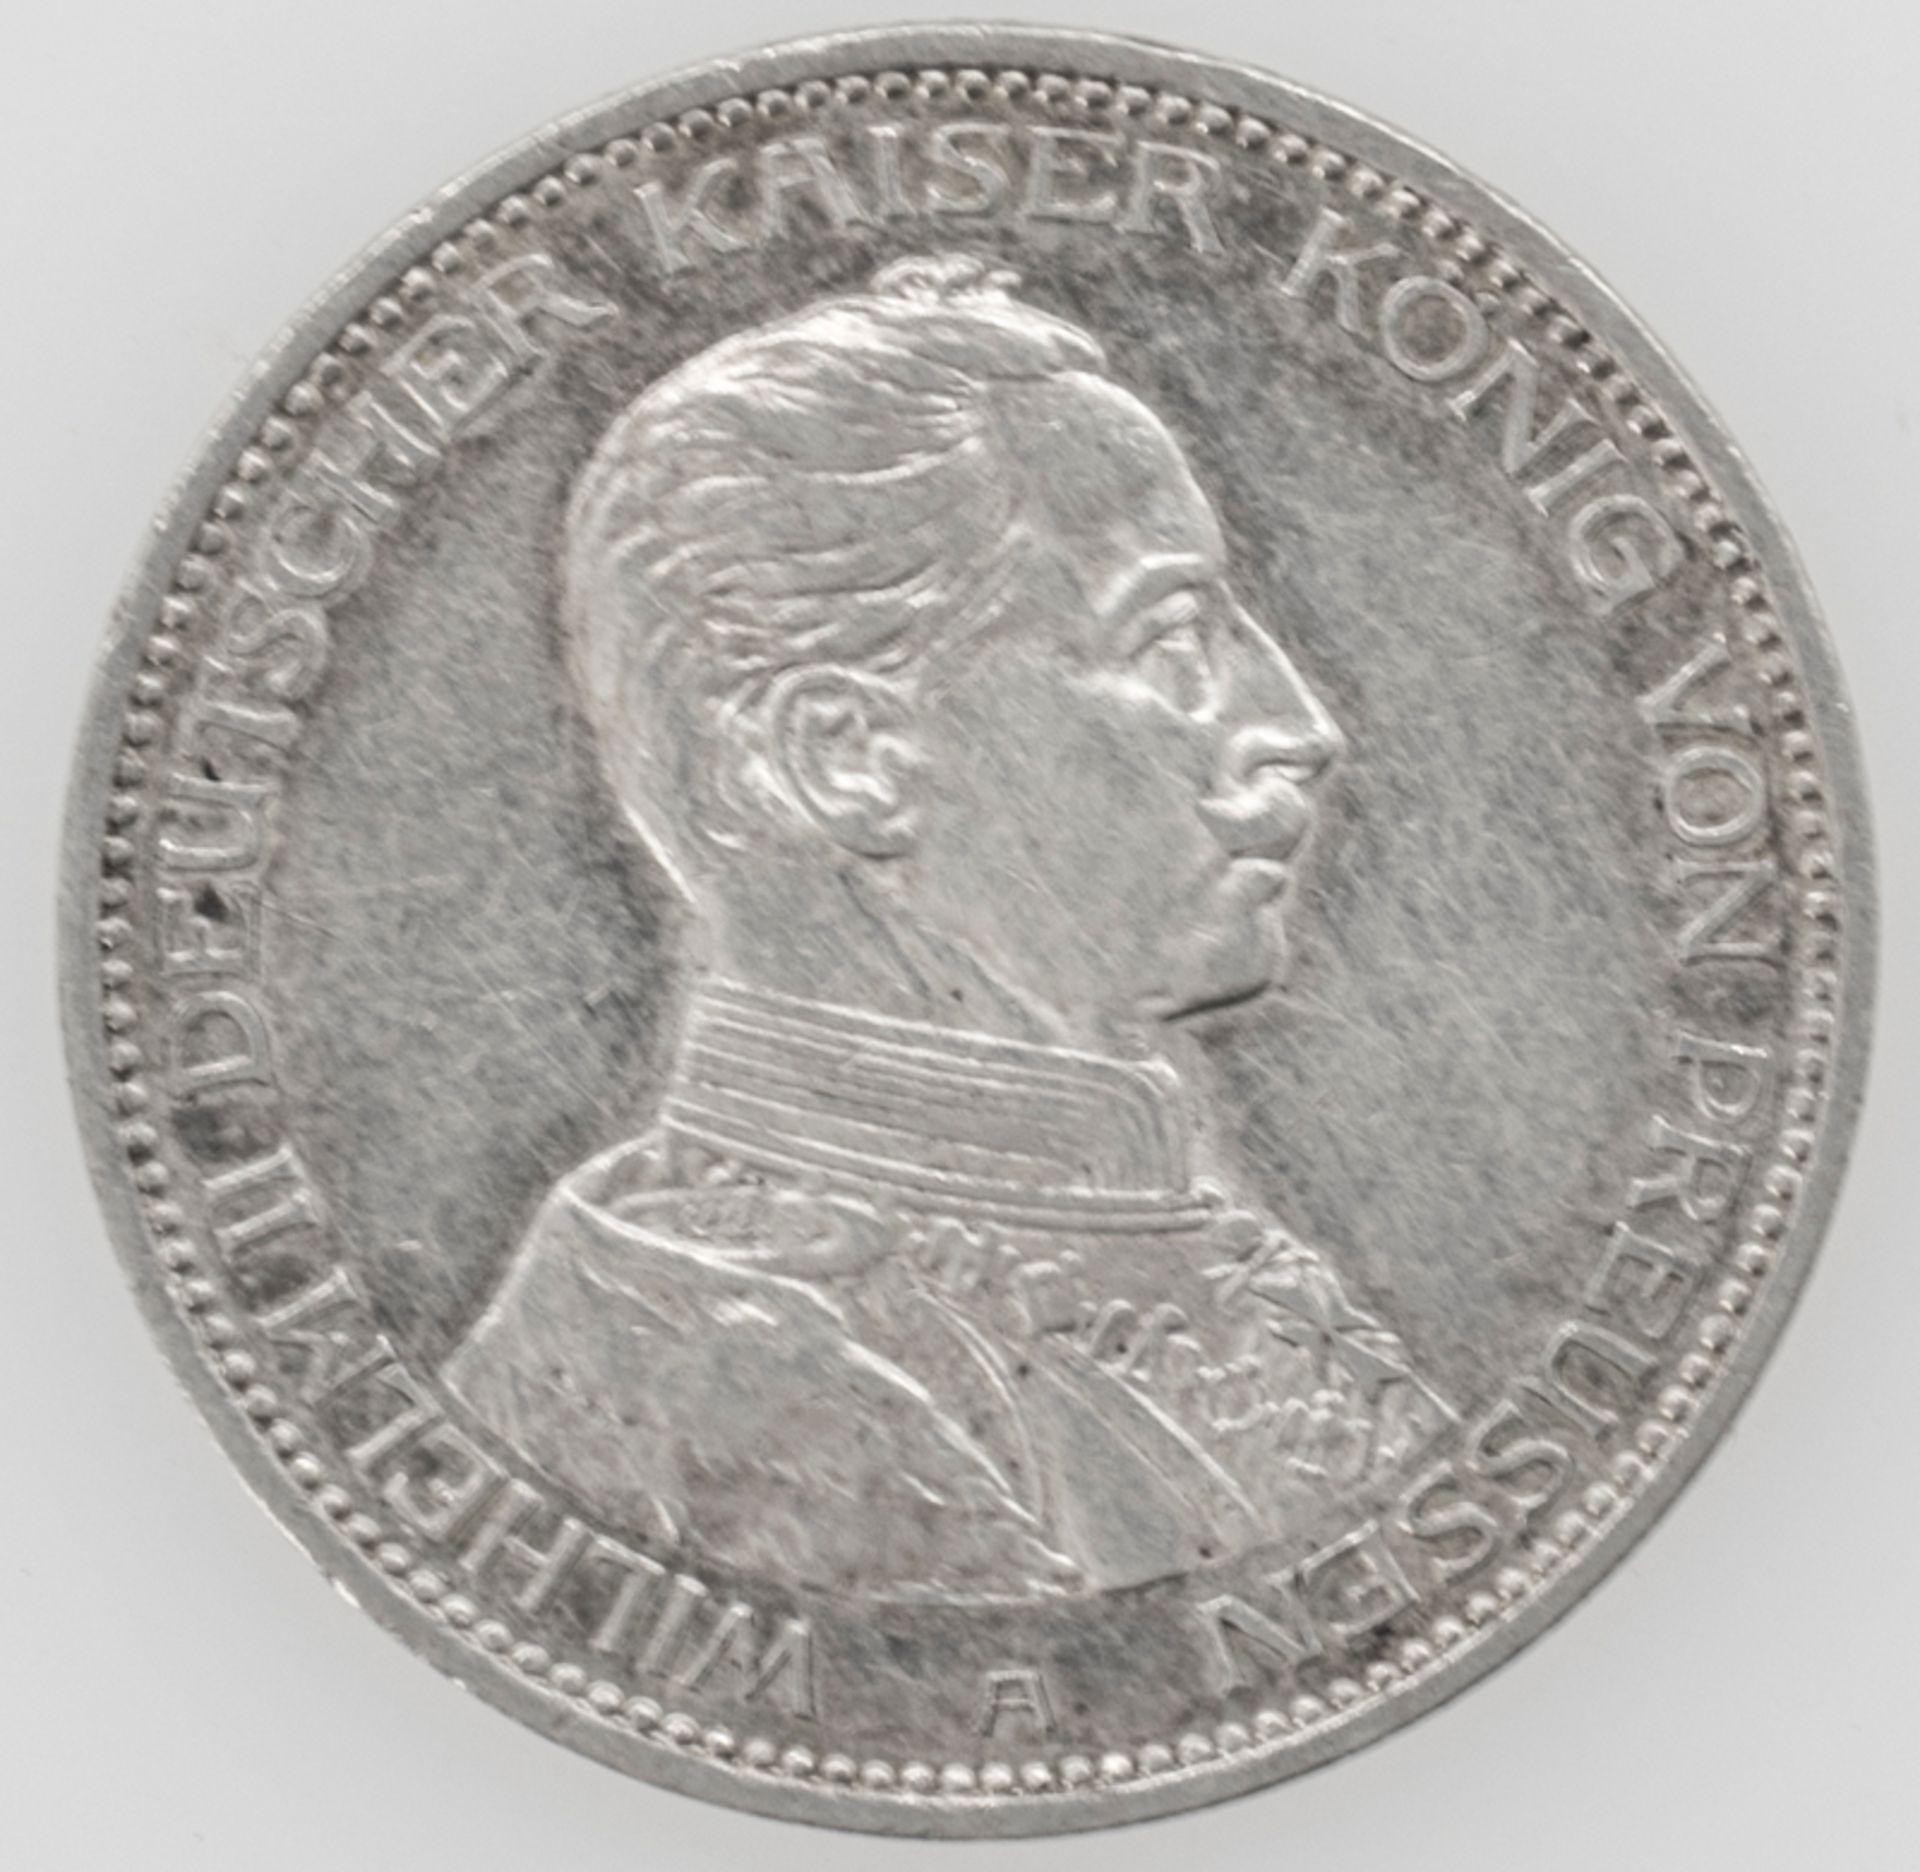 Deutsches Kaiserreich Preußen 1914, 3.- Mark - Silbermünze "Wilhelm II.". Erhaltung: ss.